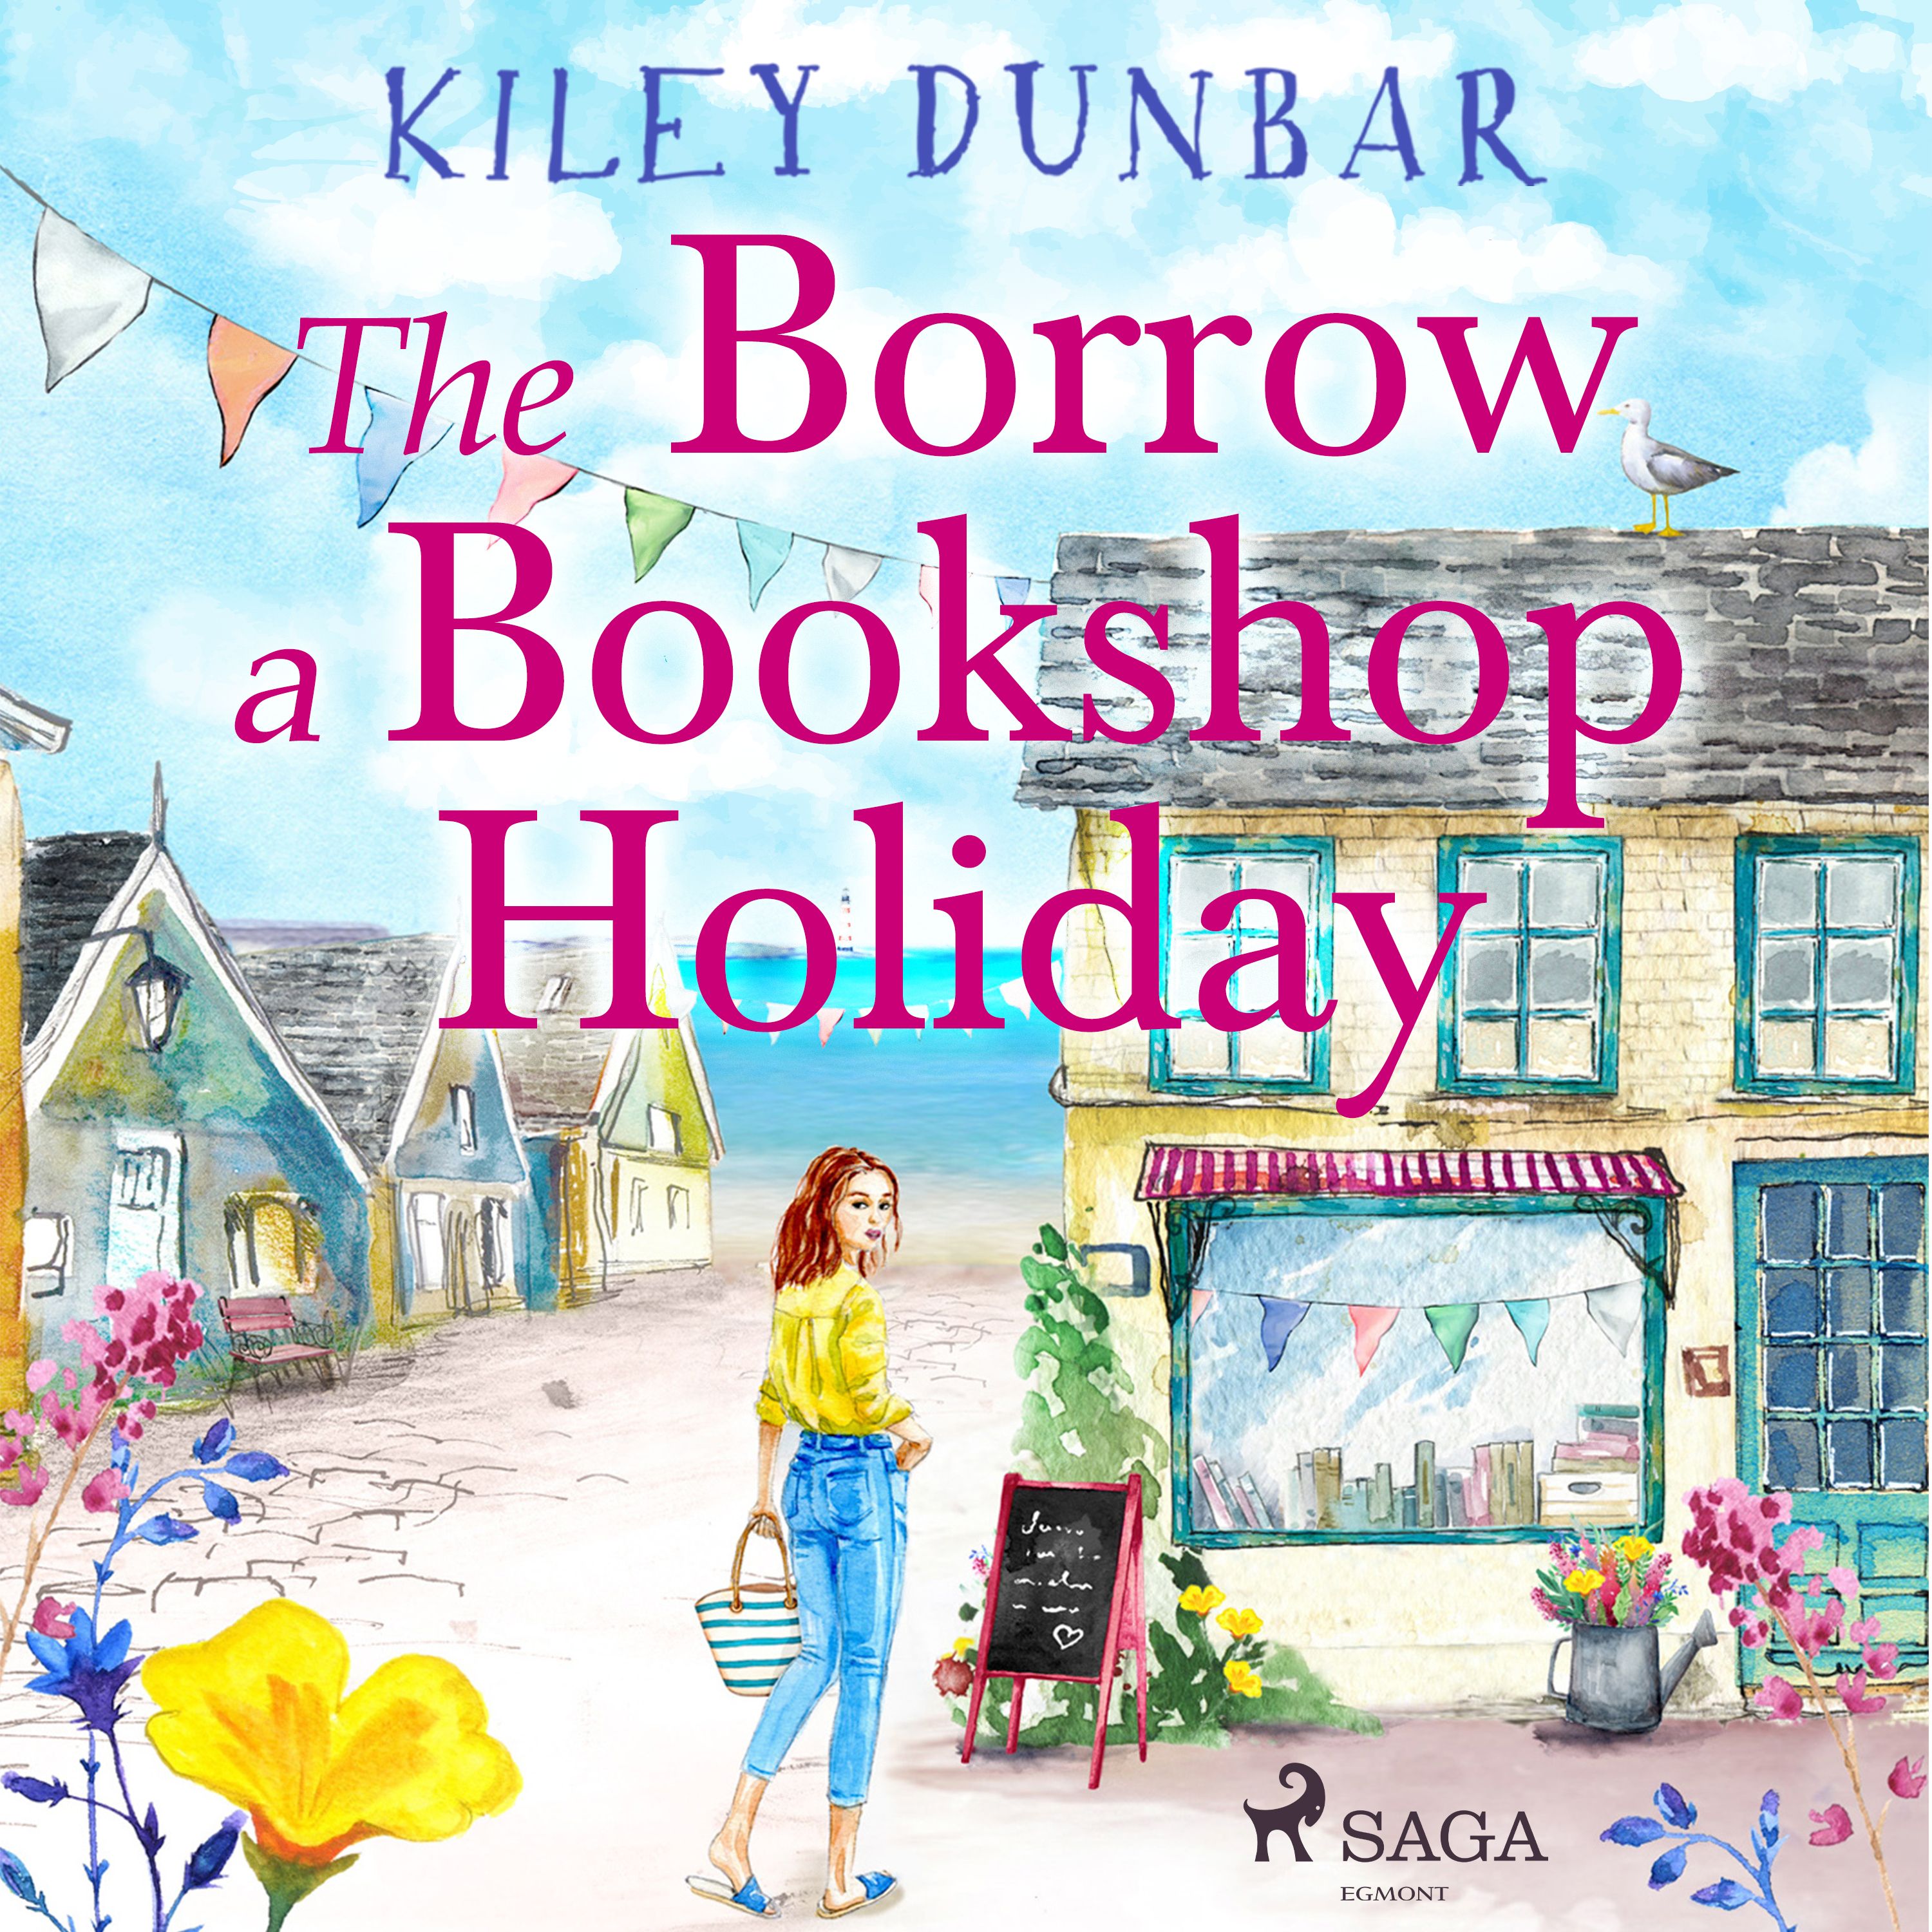 The Borrow a Bookshop Holiday, lydbog af Kiley Dunbar